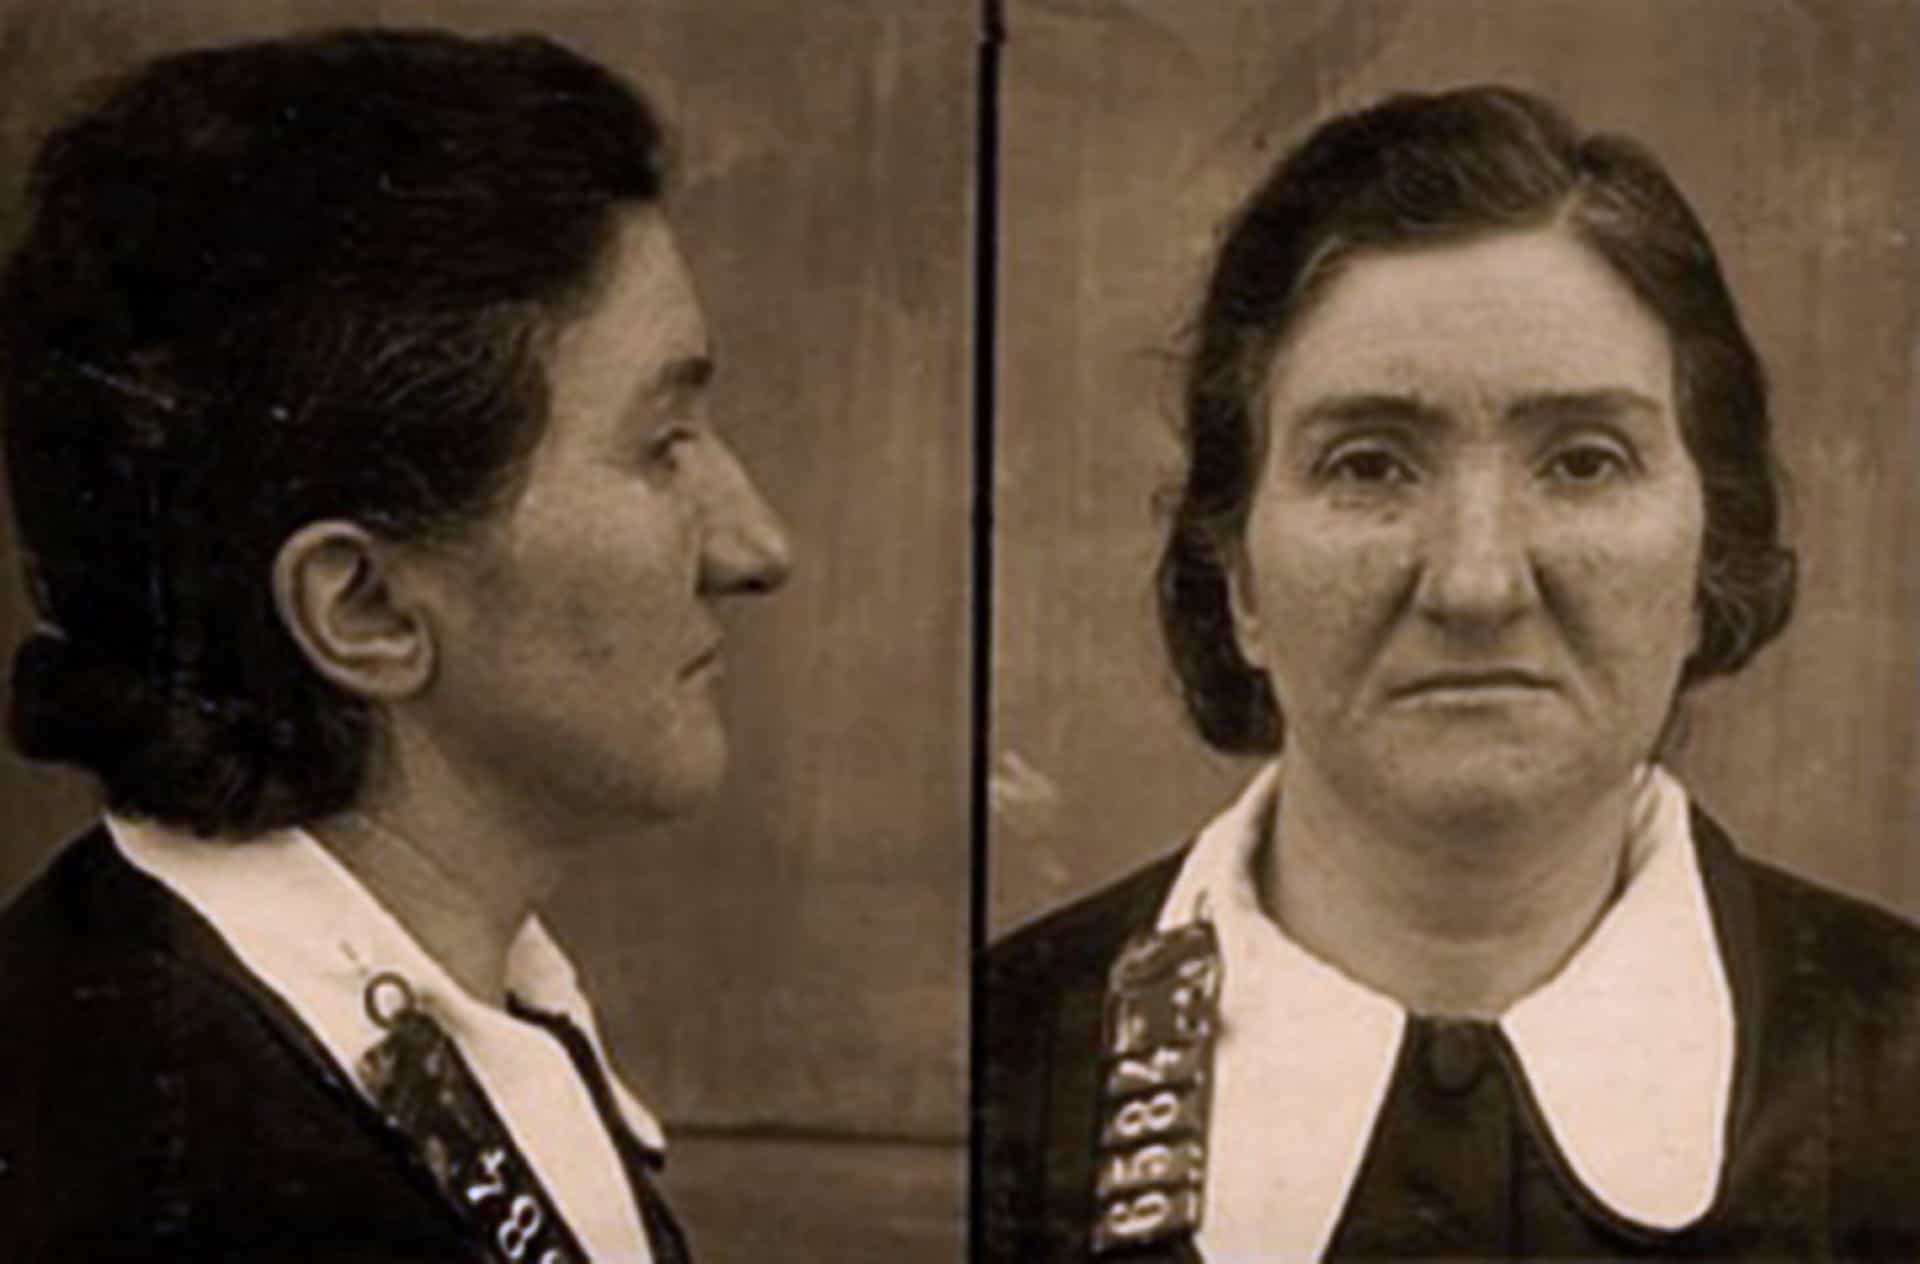 Entre 1939 e 1940, Leonarda Cianciulli assassinou três mulheres e fez bolos e sabão com seus restos mortais. Ela supostamente cometeu esses crimes para quebrar uma maldição em sua família.